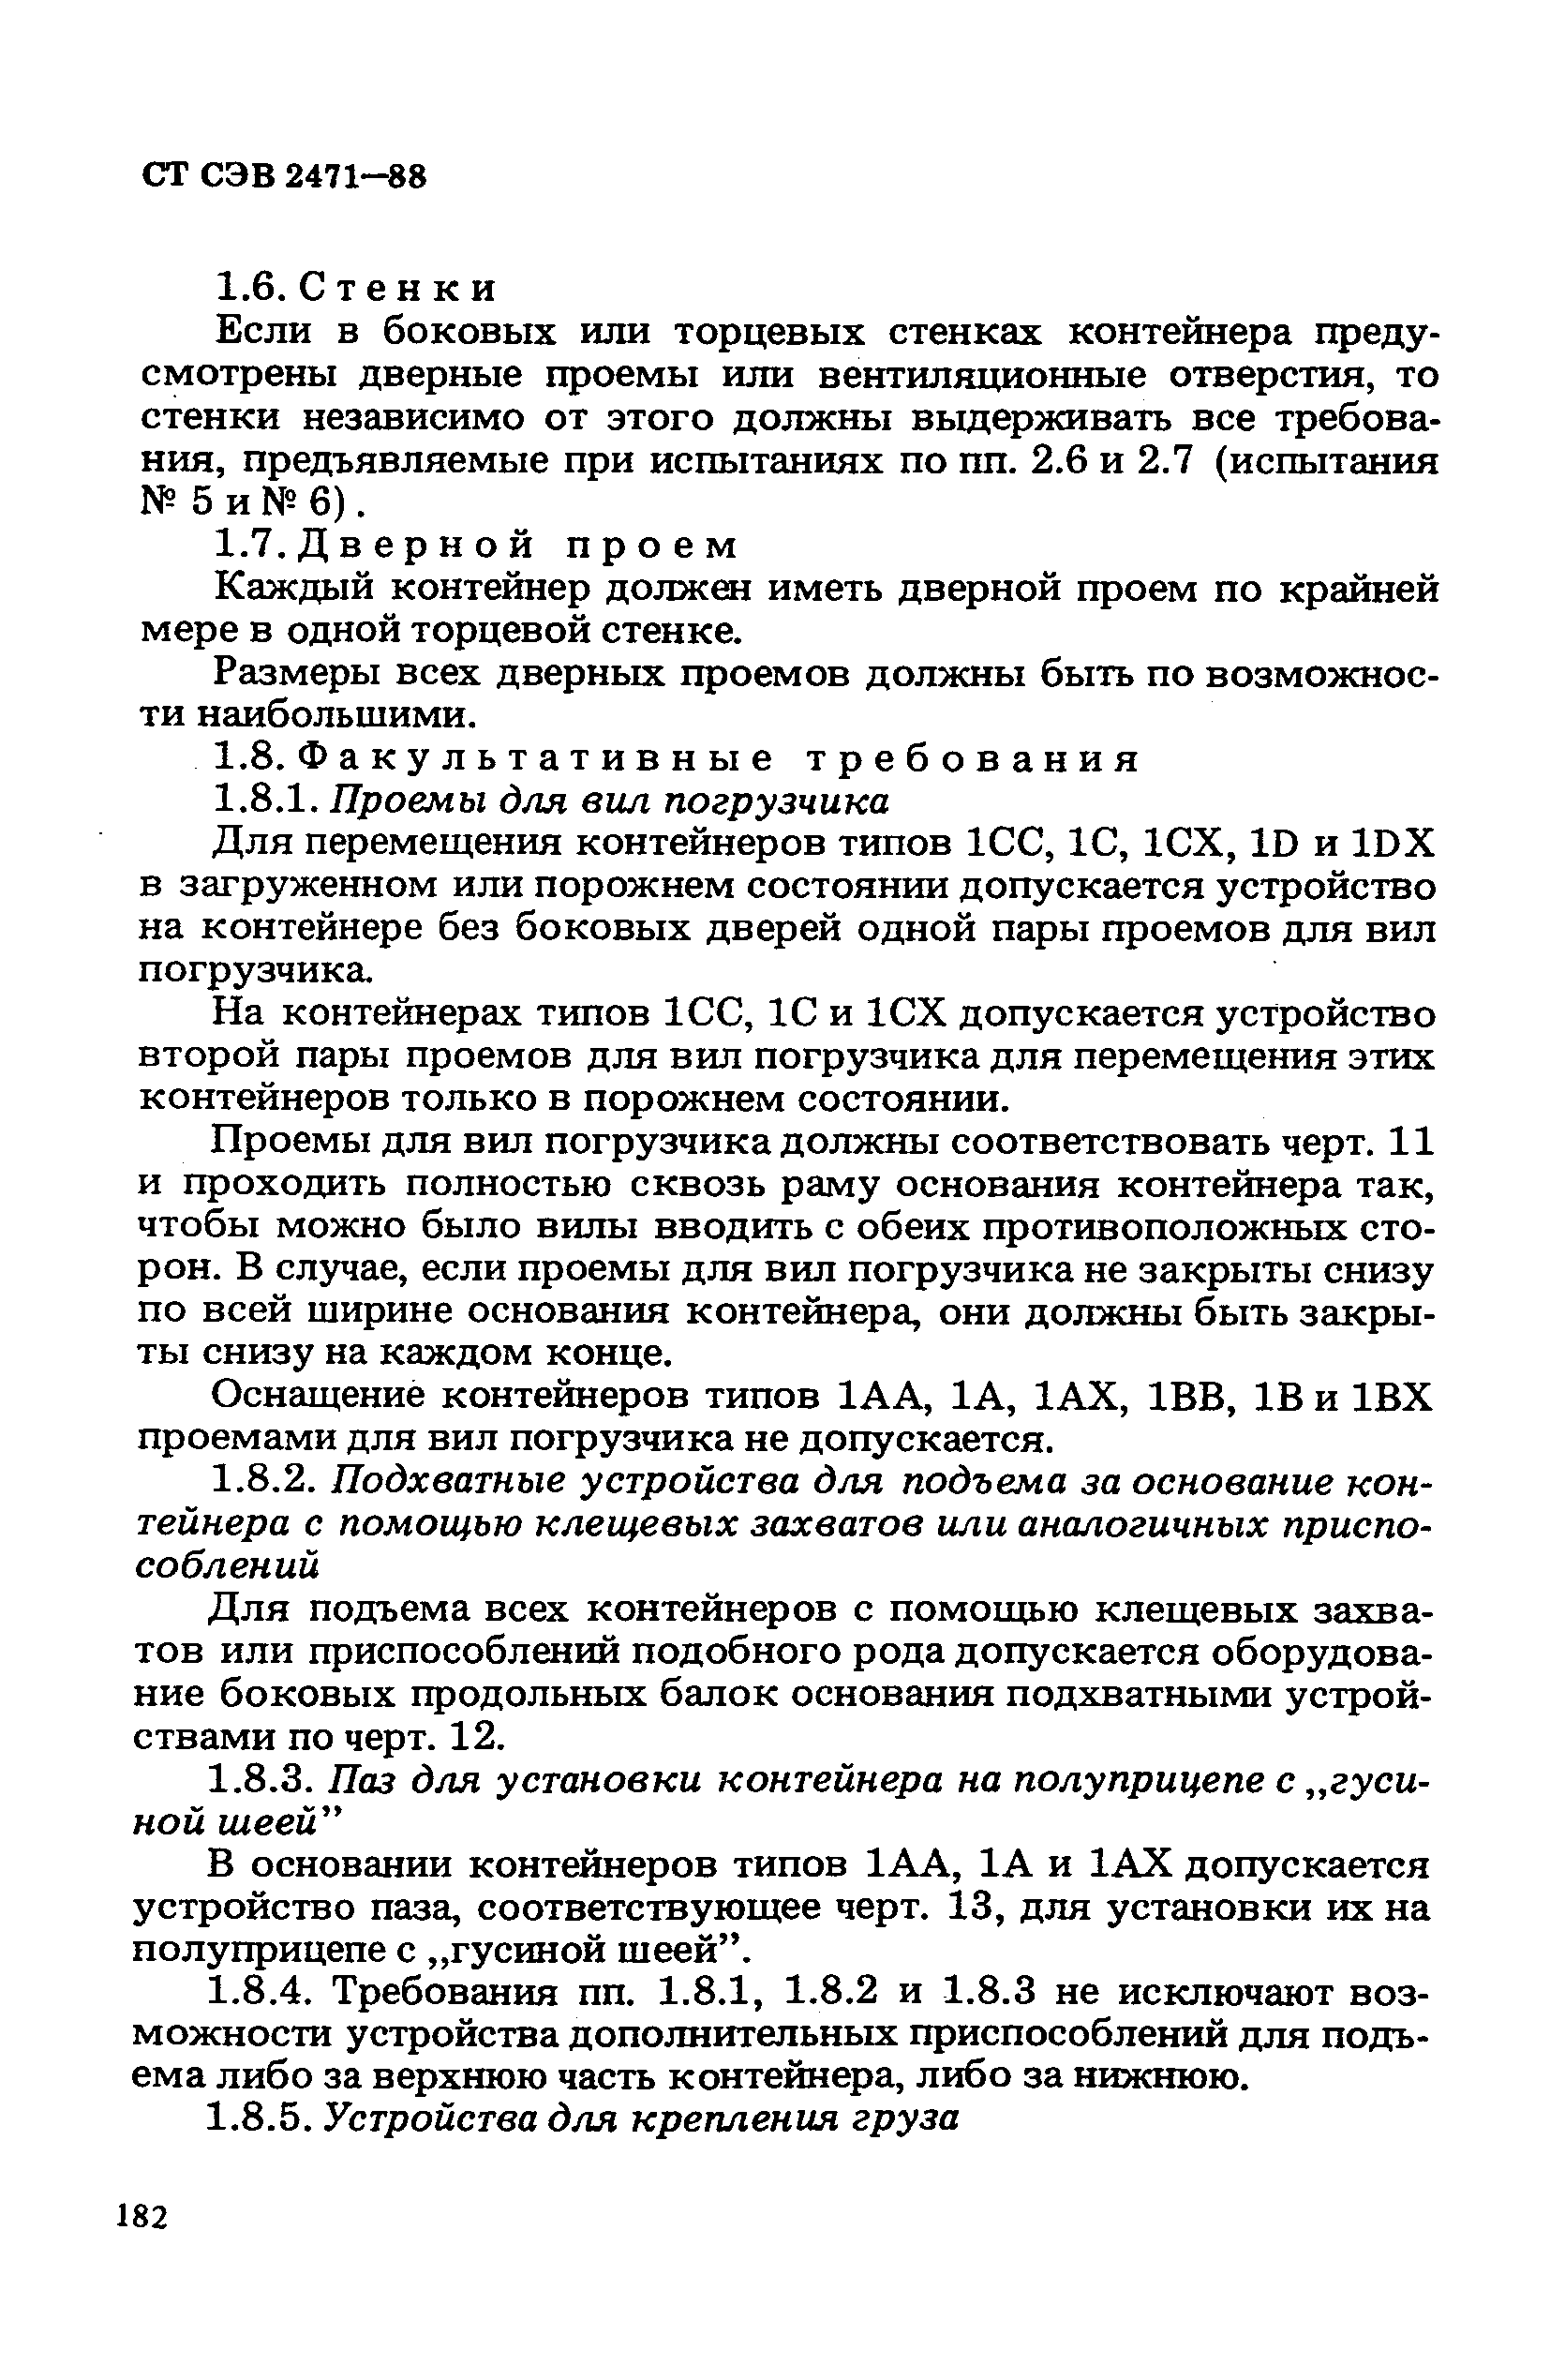 СТ СЭВ 2471-88